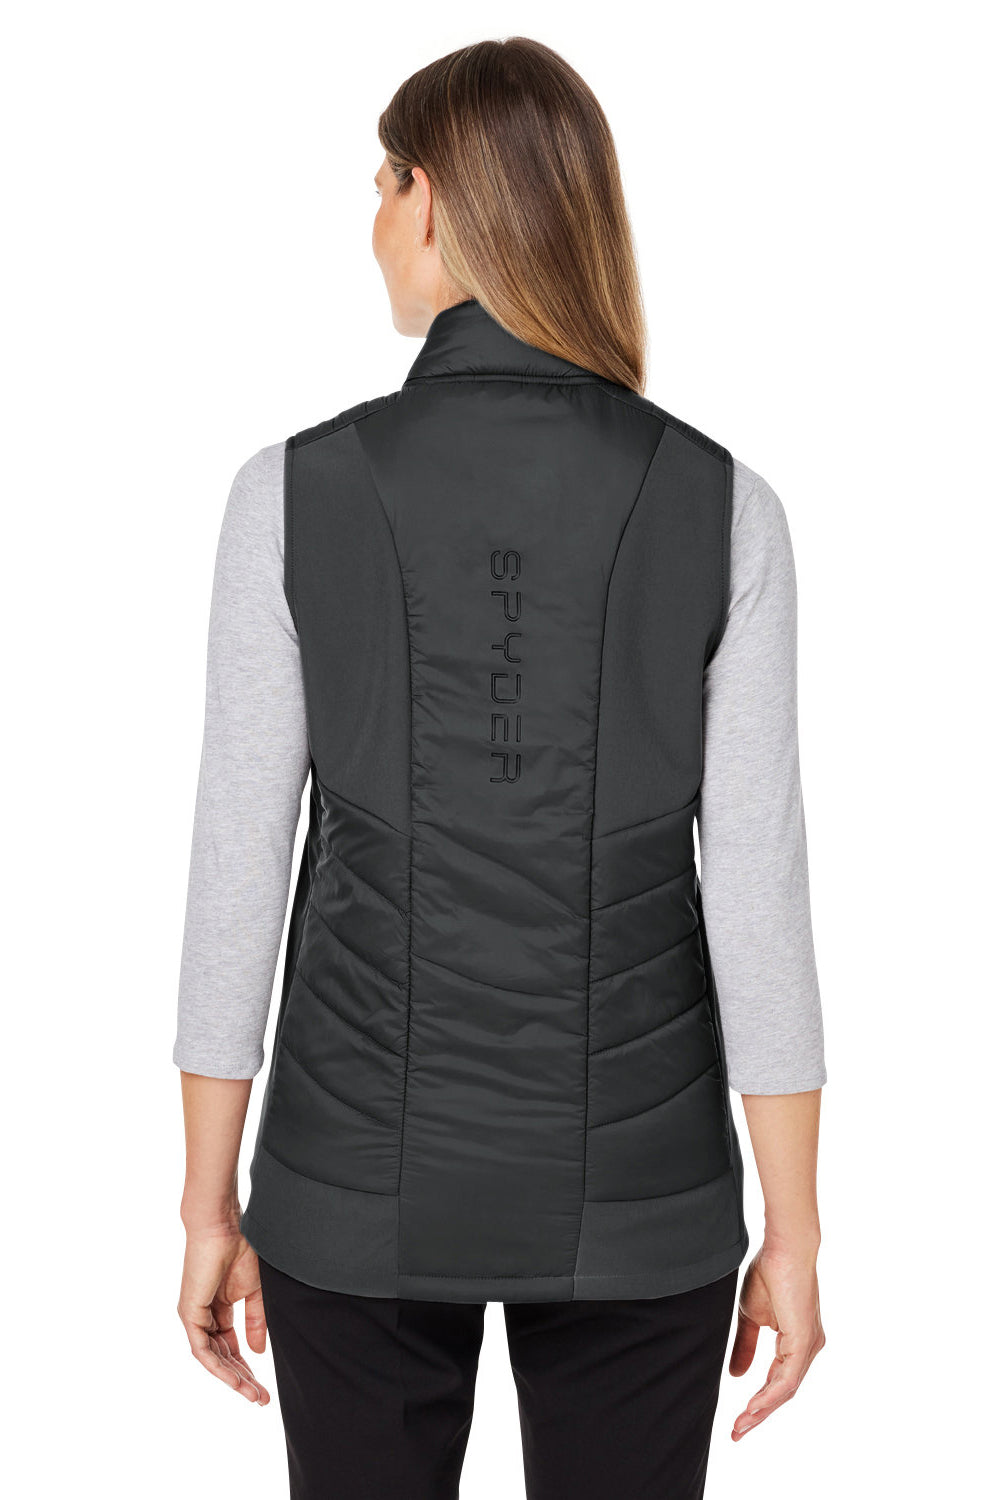 Spyder S17930 Womens Challenger Full Zip Vest Black Back